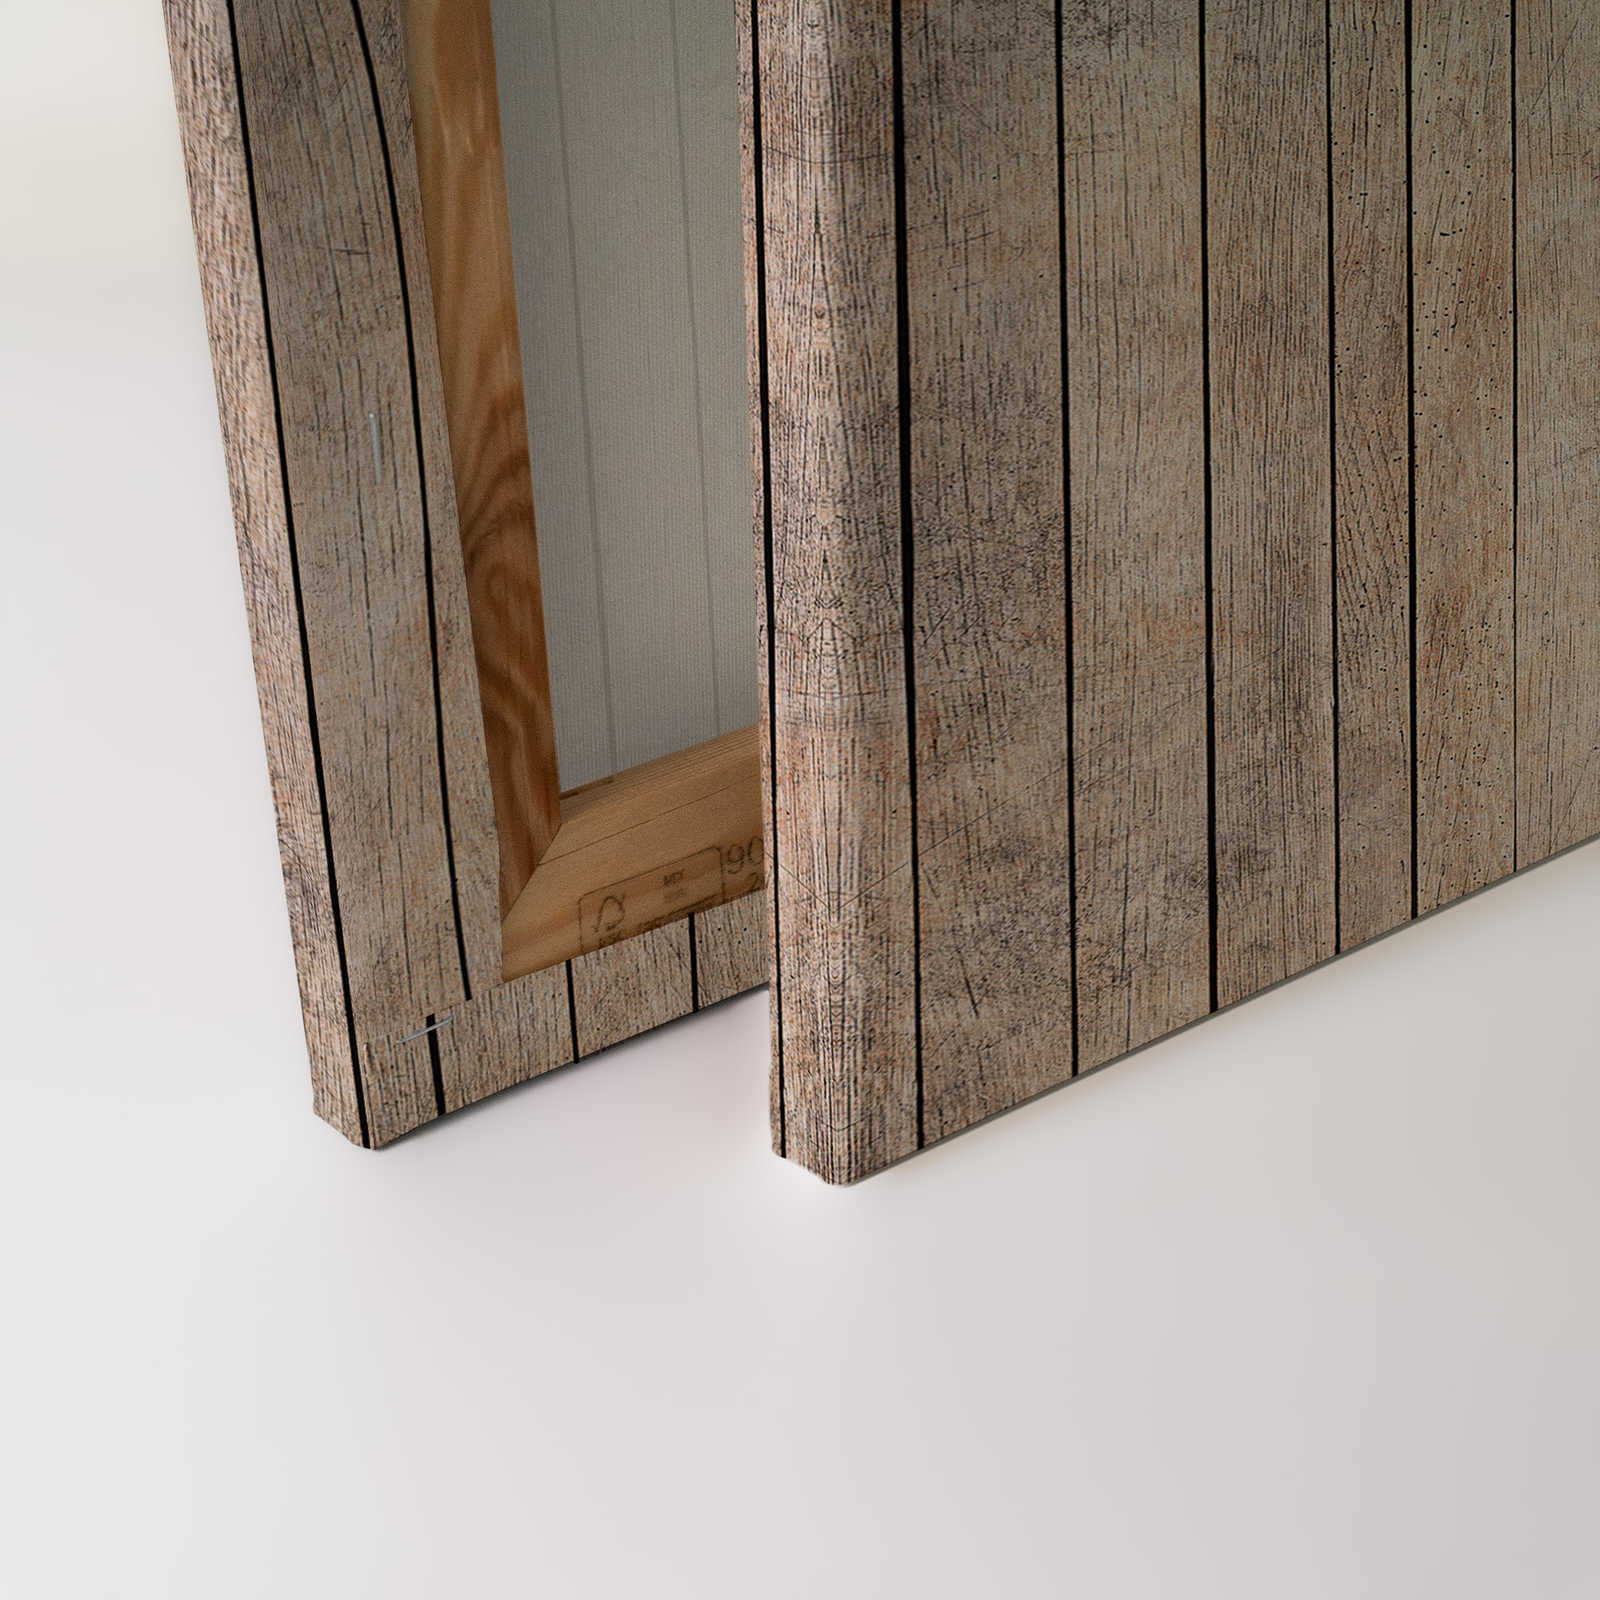             Fiaba 1 - Parete in legno con quadro su tela con gufo - 0,90 m x 0,60 m
        